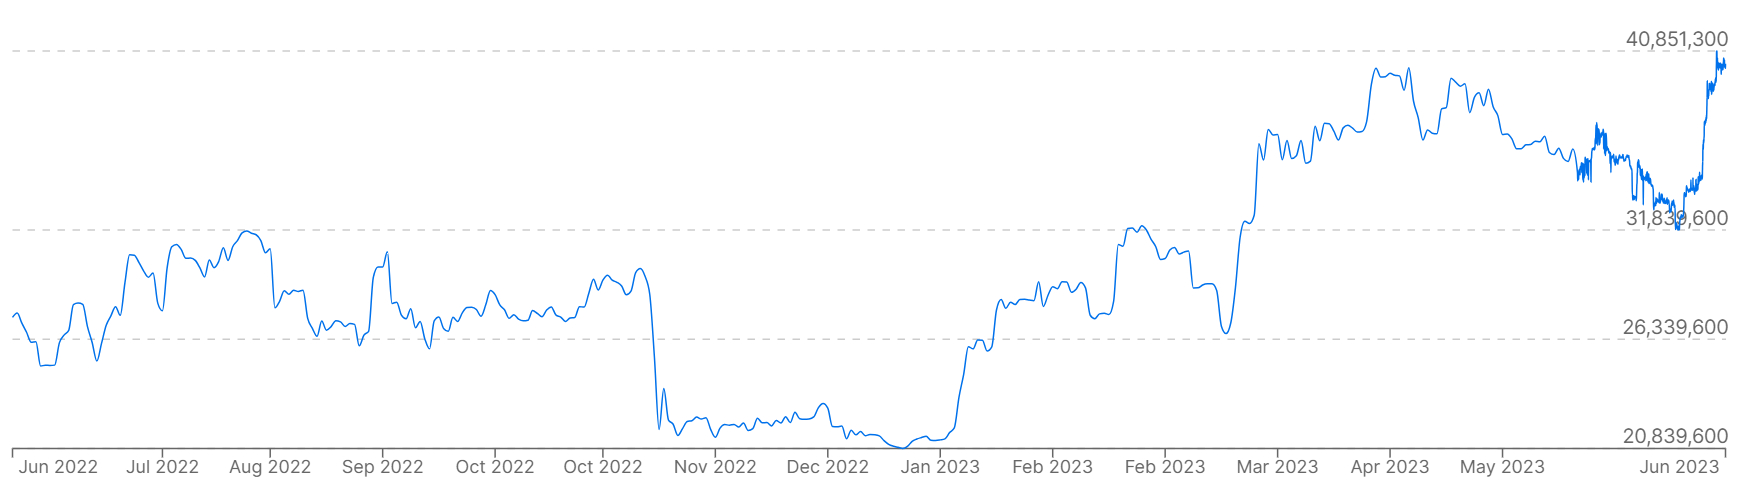 Biểu đồ hiển thị giá Bitcoin so với đồng won Hàn Quốc trong năm qua.